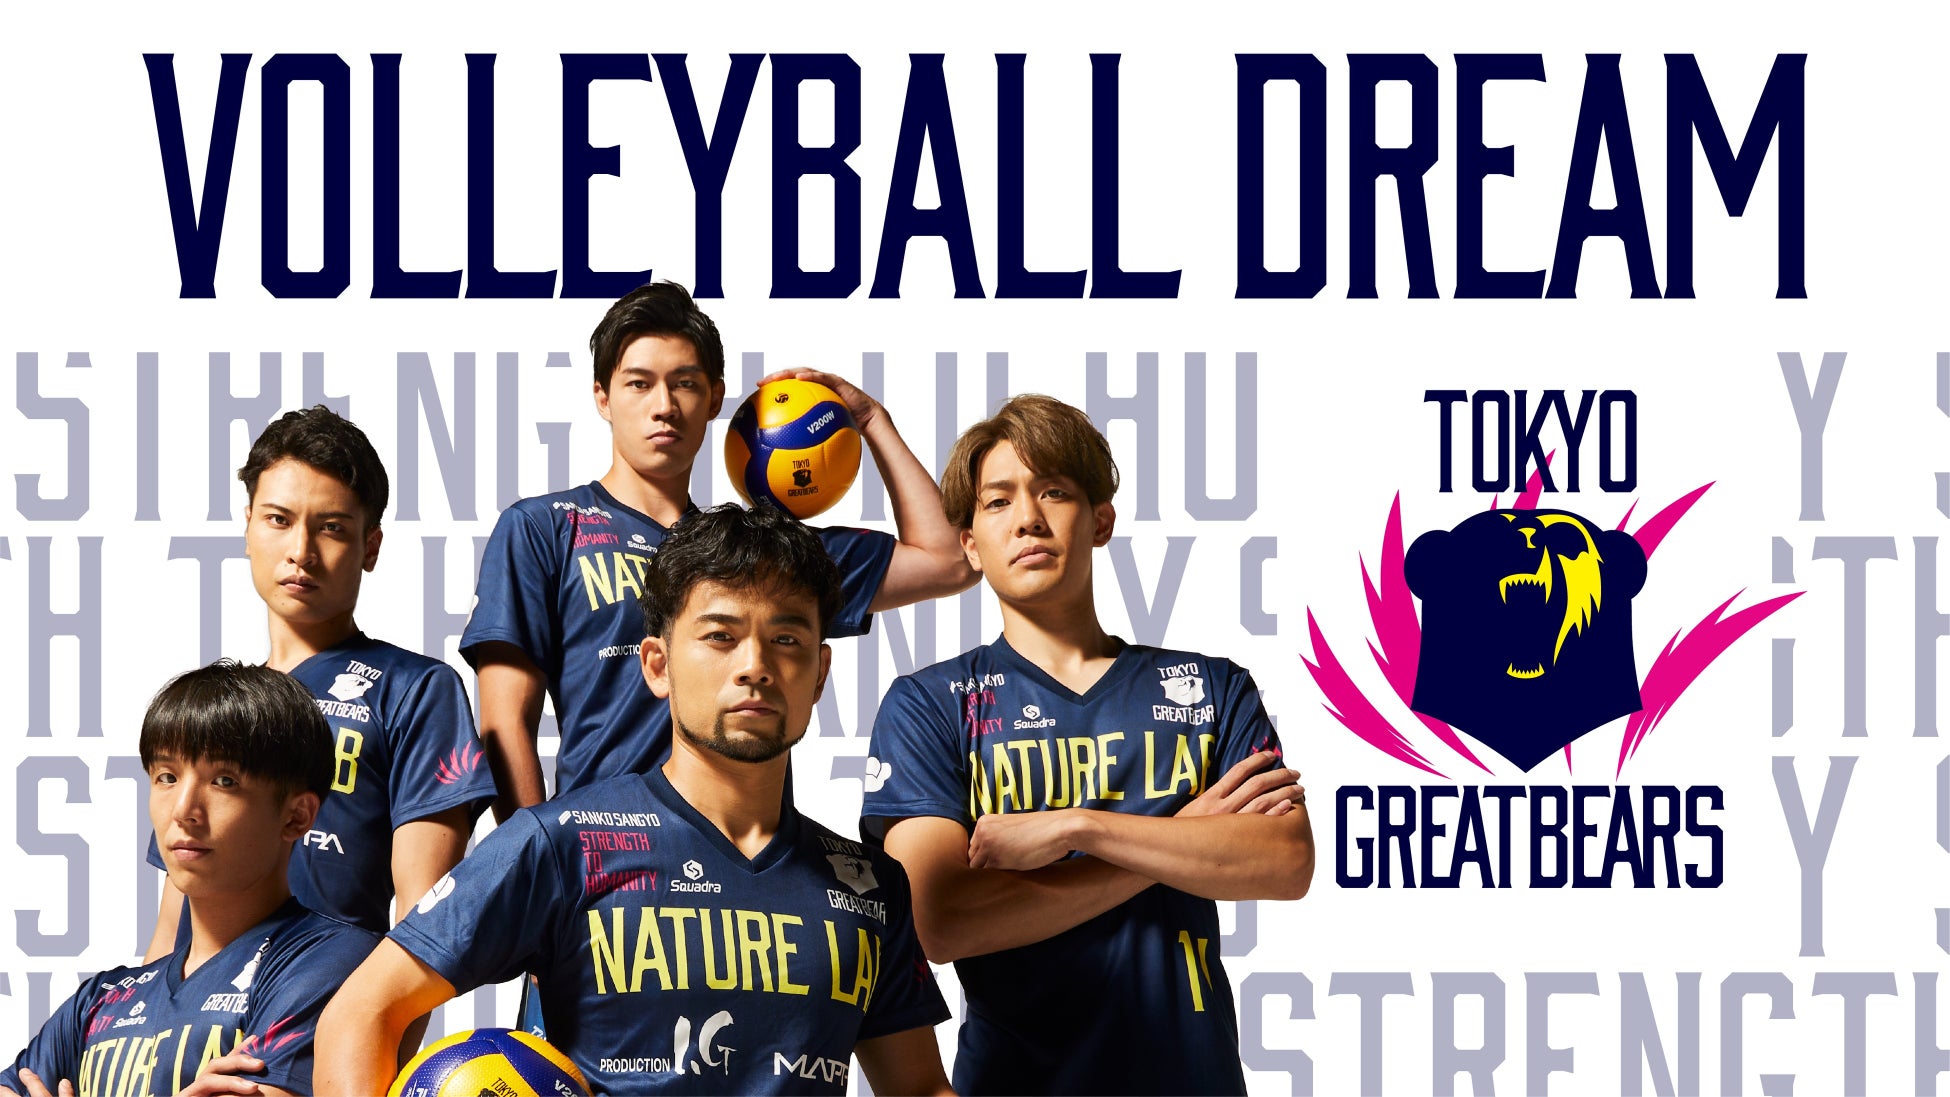 ギークピクチュアズ製作、東京グレートベアーズ ファーストシーズンに密着したスポーツドキュメンタリー「VOLLEYBALL DREAM」が5つの動画配信サービスで、9月29日（金）より随時配信決定！